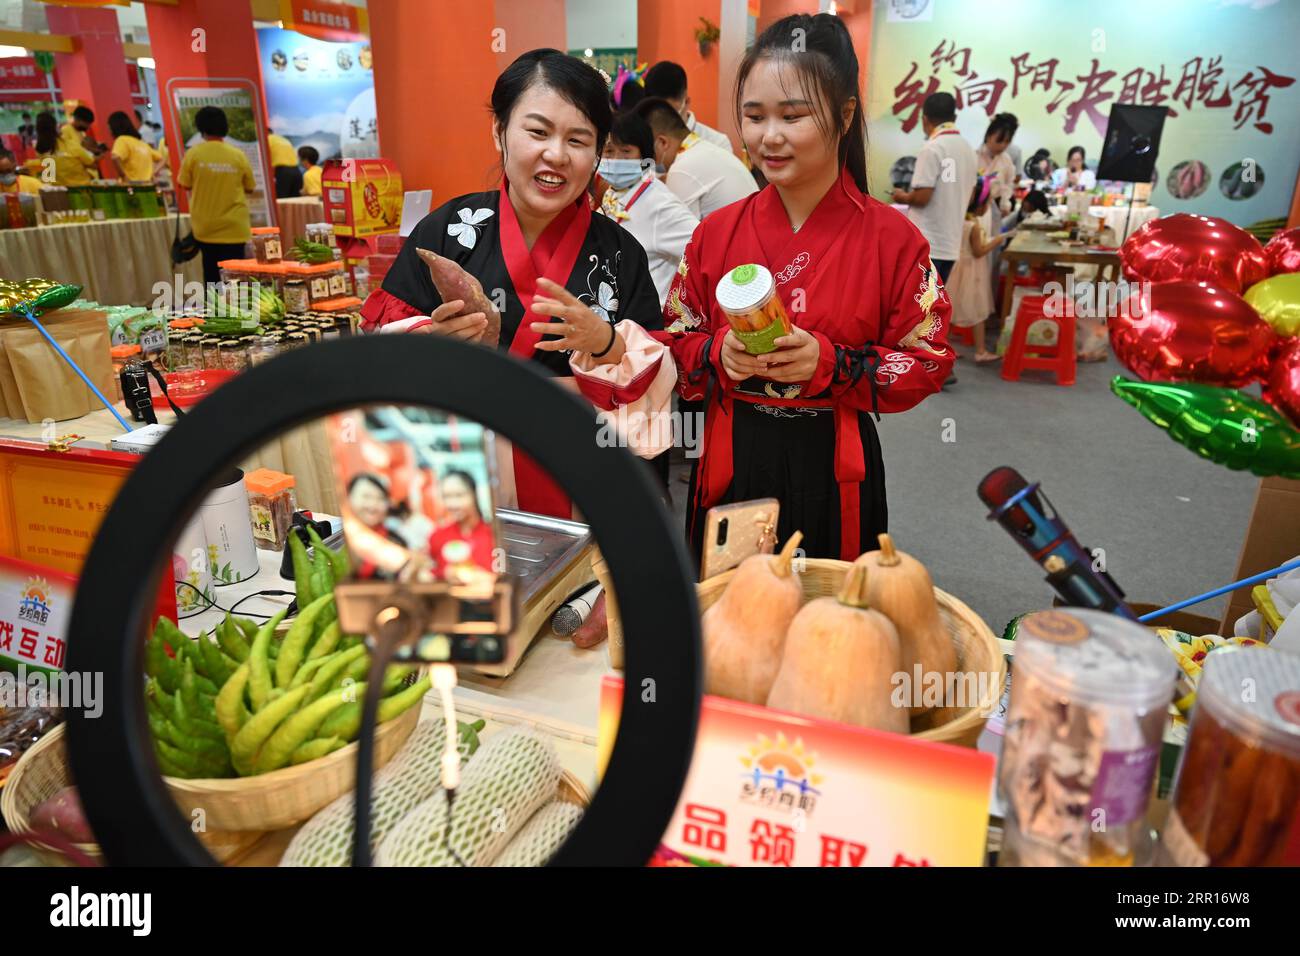 200907 -- NAN, 7. Sept. 2020 -- die Aussteller Wu Fengru L und Lin Yajun bewerben landwirtschaftliche Produkte per Live-Streaming während der 13. Landwirtschaftsmesse Quanzhou in Nan, Provinz Fujian im Südosten Chinas, 7. Sept. 2020. Die Messe startete am Montag, und die Aussteller versuchen, ihre Verkäufe über Live-Streaming zu steigern. CHINA-FUJIAN-AGRICULTURAL PRODUCTS FAIR-OPEN CN SONGXWEIWEI PUBLICATIONXNOTXINXCHN Stockfoto